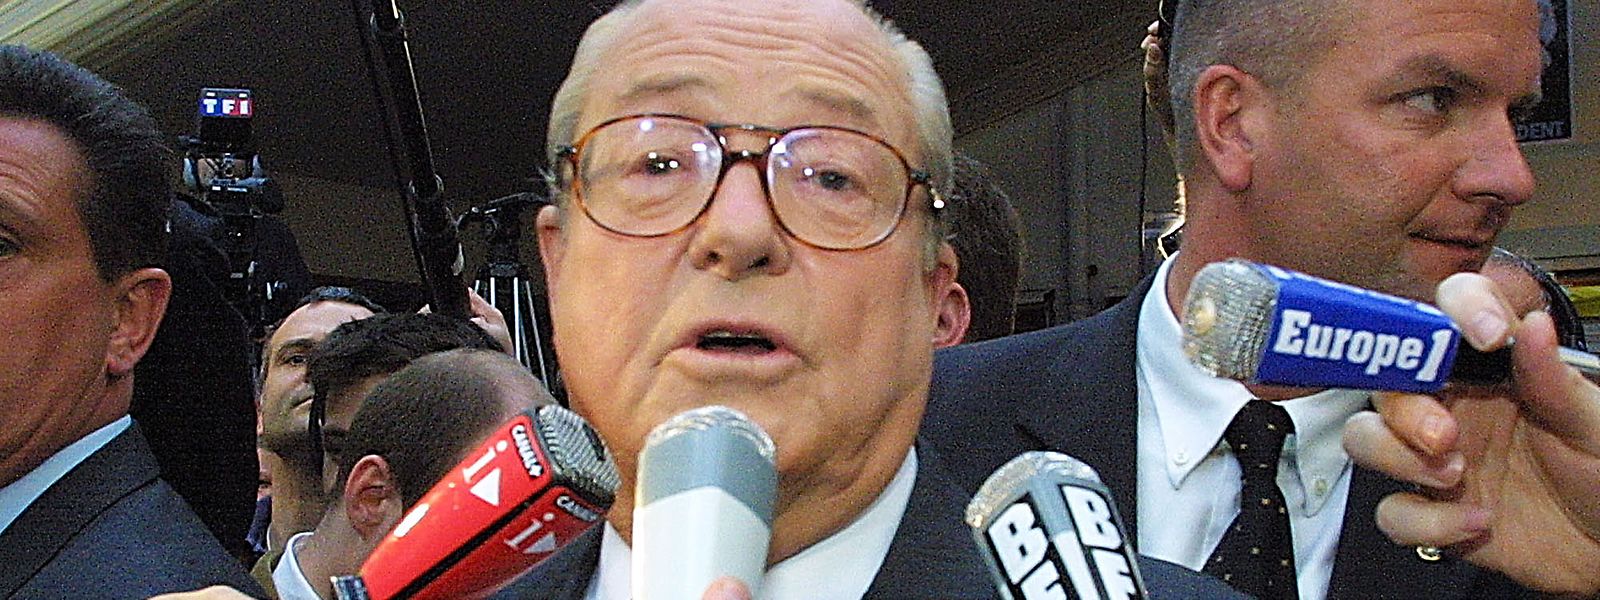 Le 21 avril 2002, Jean-Marie Le Pen crée une immense surprise en arrivant second au premier tour de l’élection présidentielle, derrière Jacques Chirac.